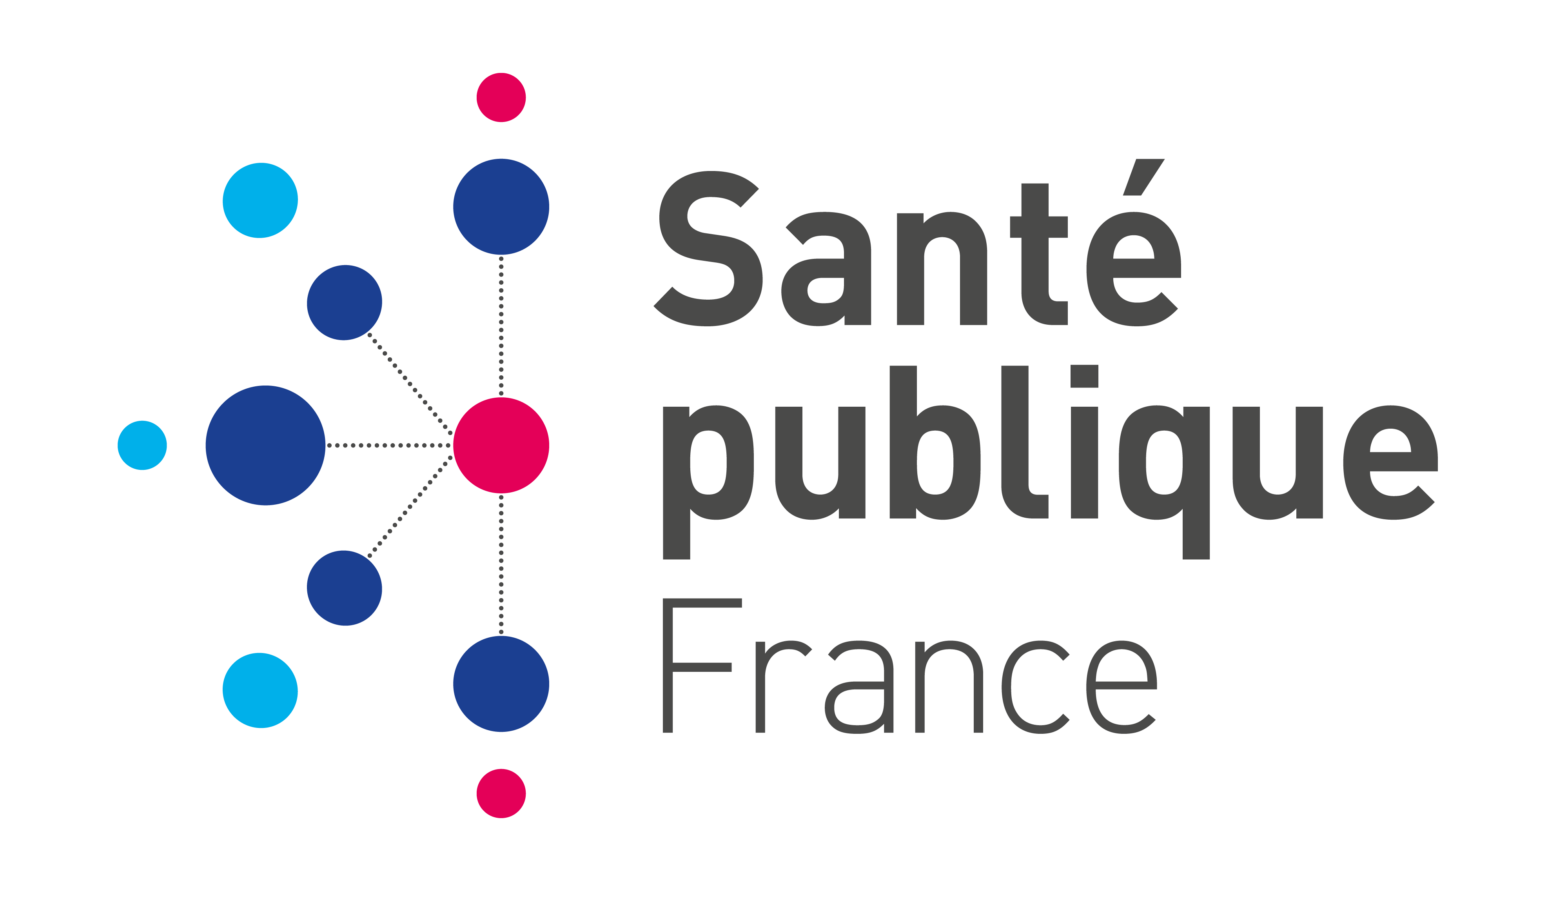 logo_sante-publique-france